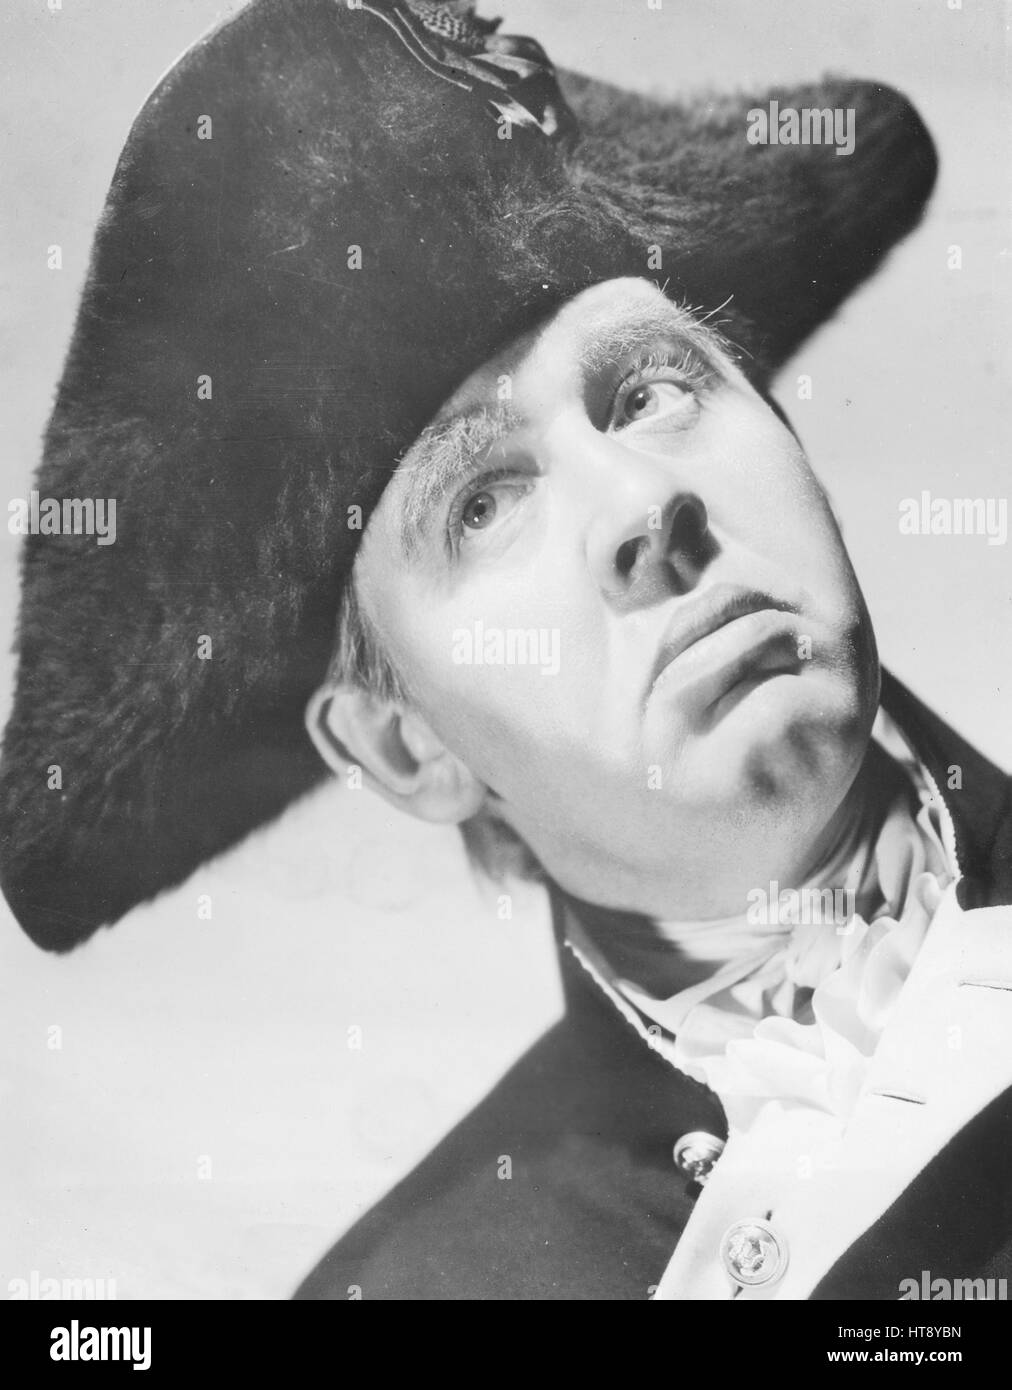 'Non plus salé marin ont navigué sur les sept mers que le capitaine William Bligh, joué par Charles Laughton dans metro-goldwyn-mayer's production ambitieuse de mutinerie sur le Bounty,' l'histoire vraie de la plus spectaculaire chapitre dans l'histoire maritime, qui est dirigé par Frank Lloyd.' Banque D'Images